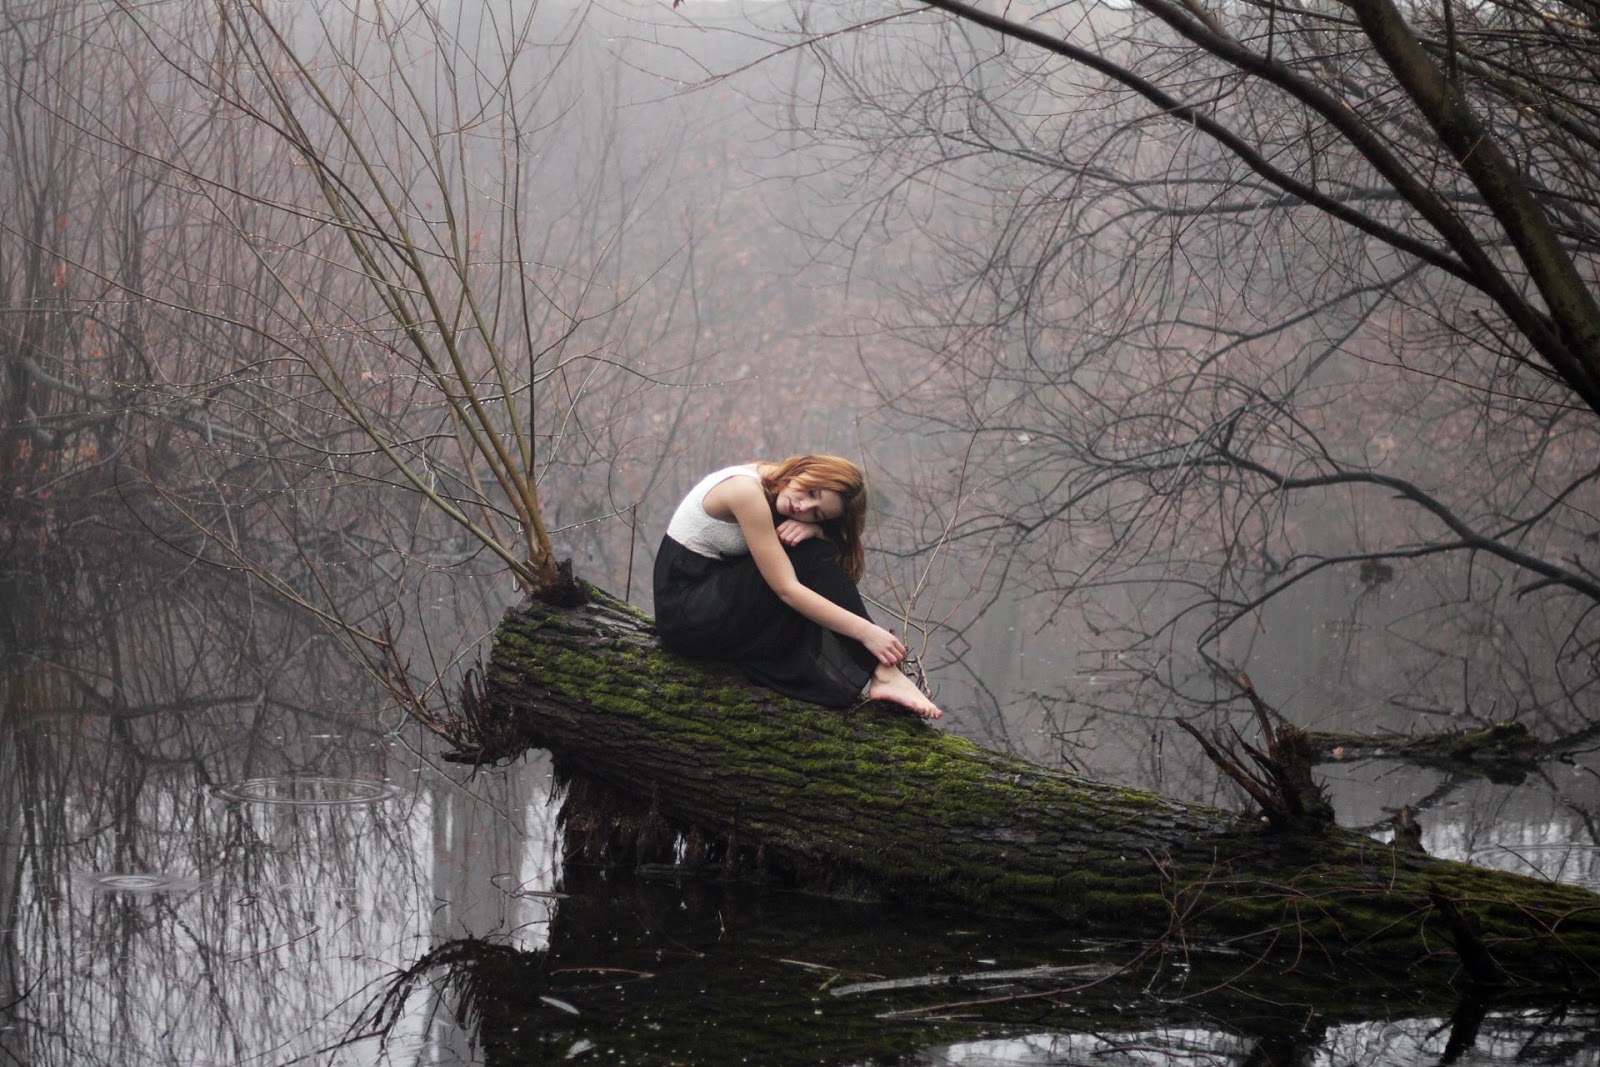        Magdalena Łuniewska Fotografia: Girl in fog